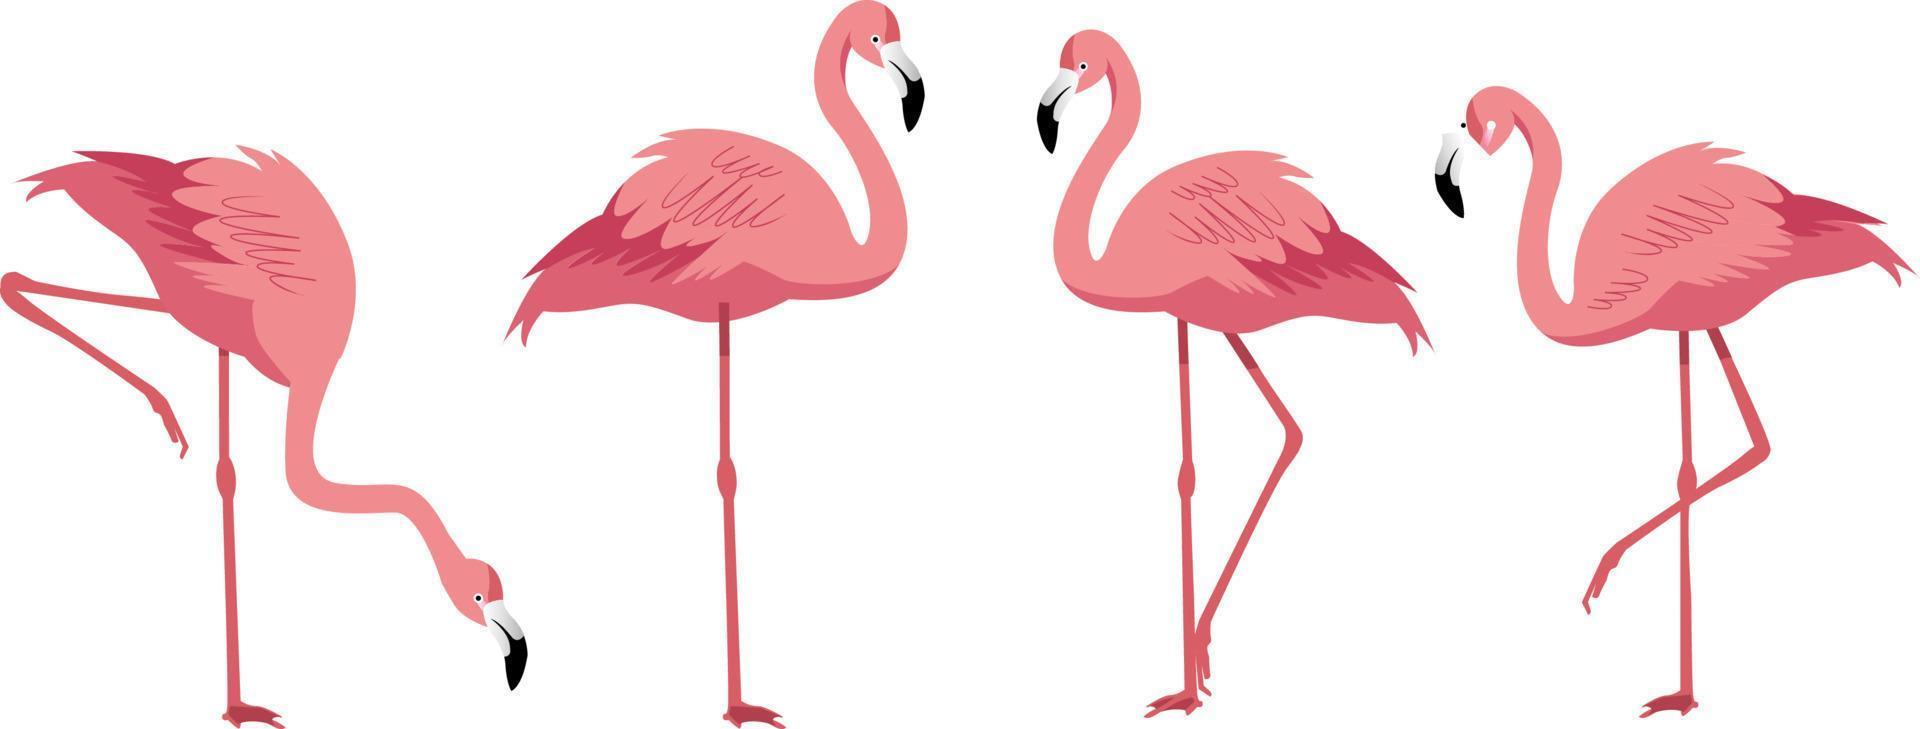 sommar koncept bakgrund med flamingo och naturliga blad vektorillustration vektor